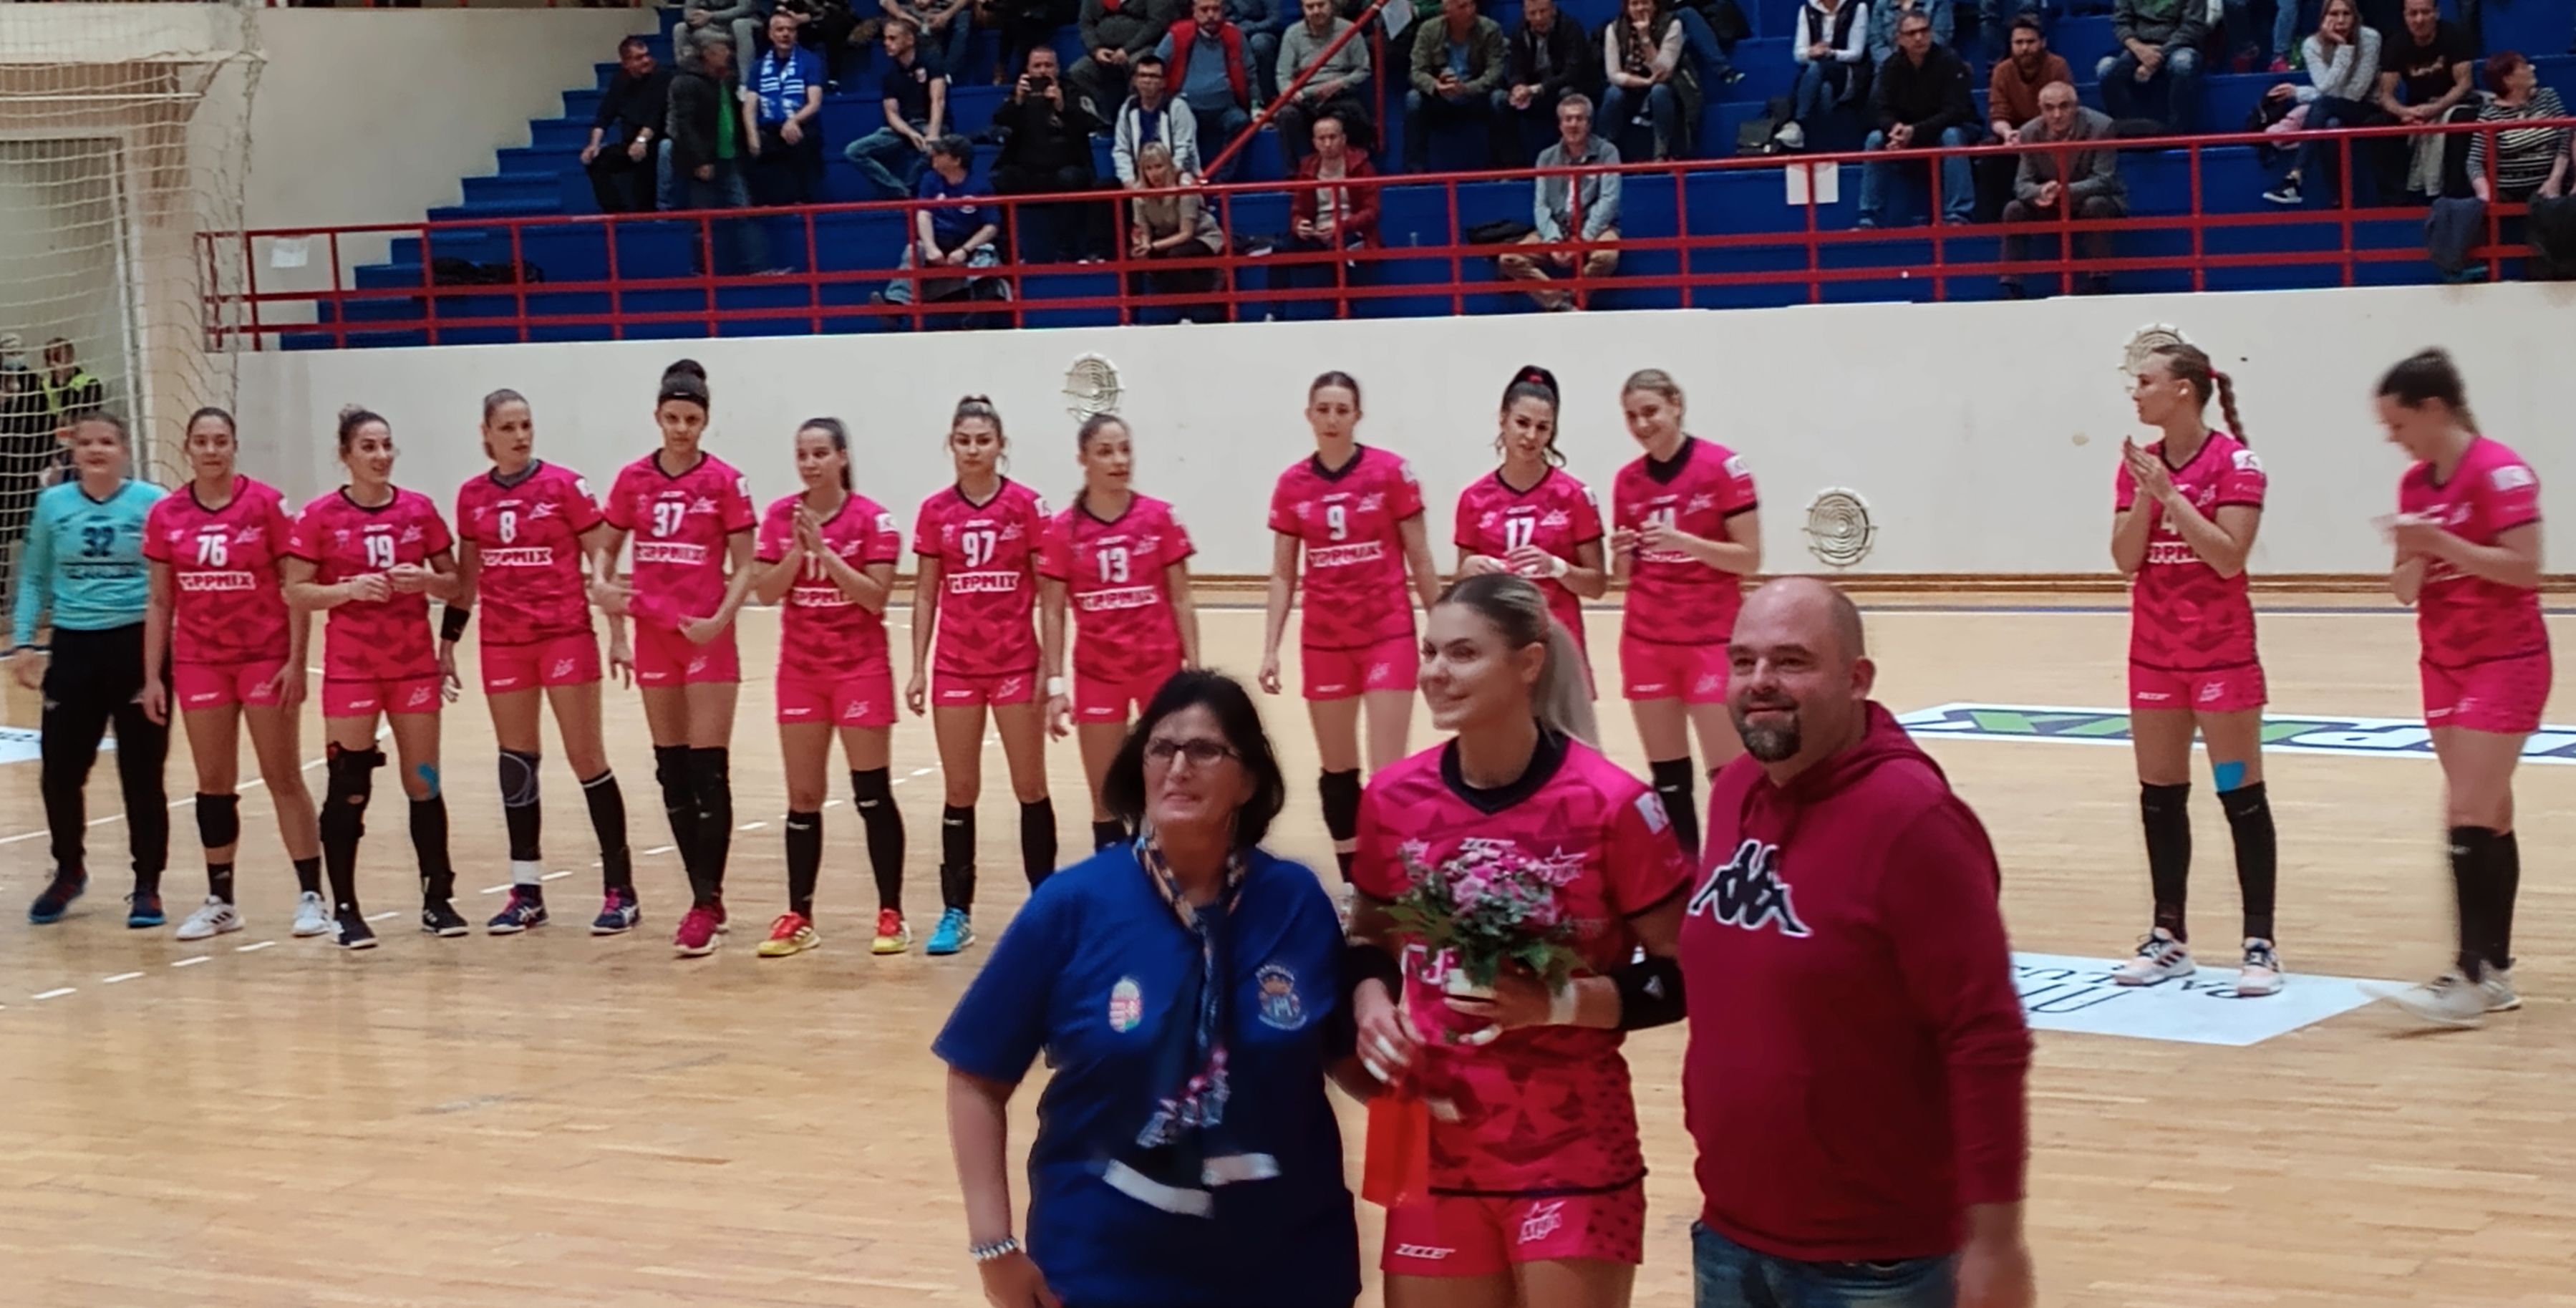 A kevesebbet hibázó csapat nyerte a kézilabda mérkőzést Székesfehérváron